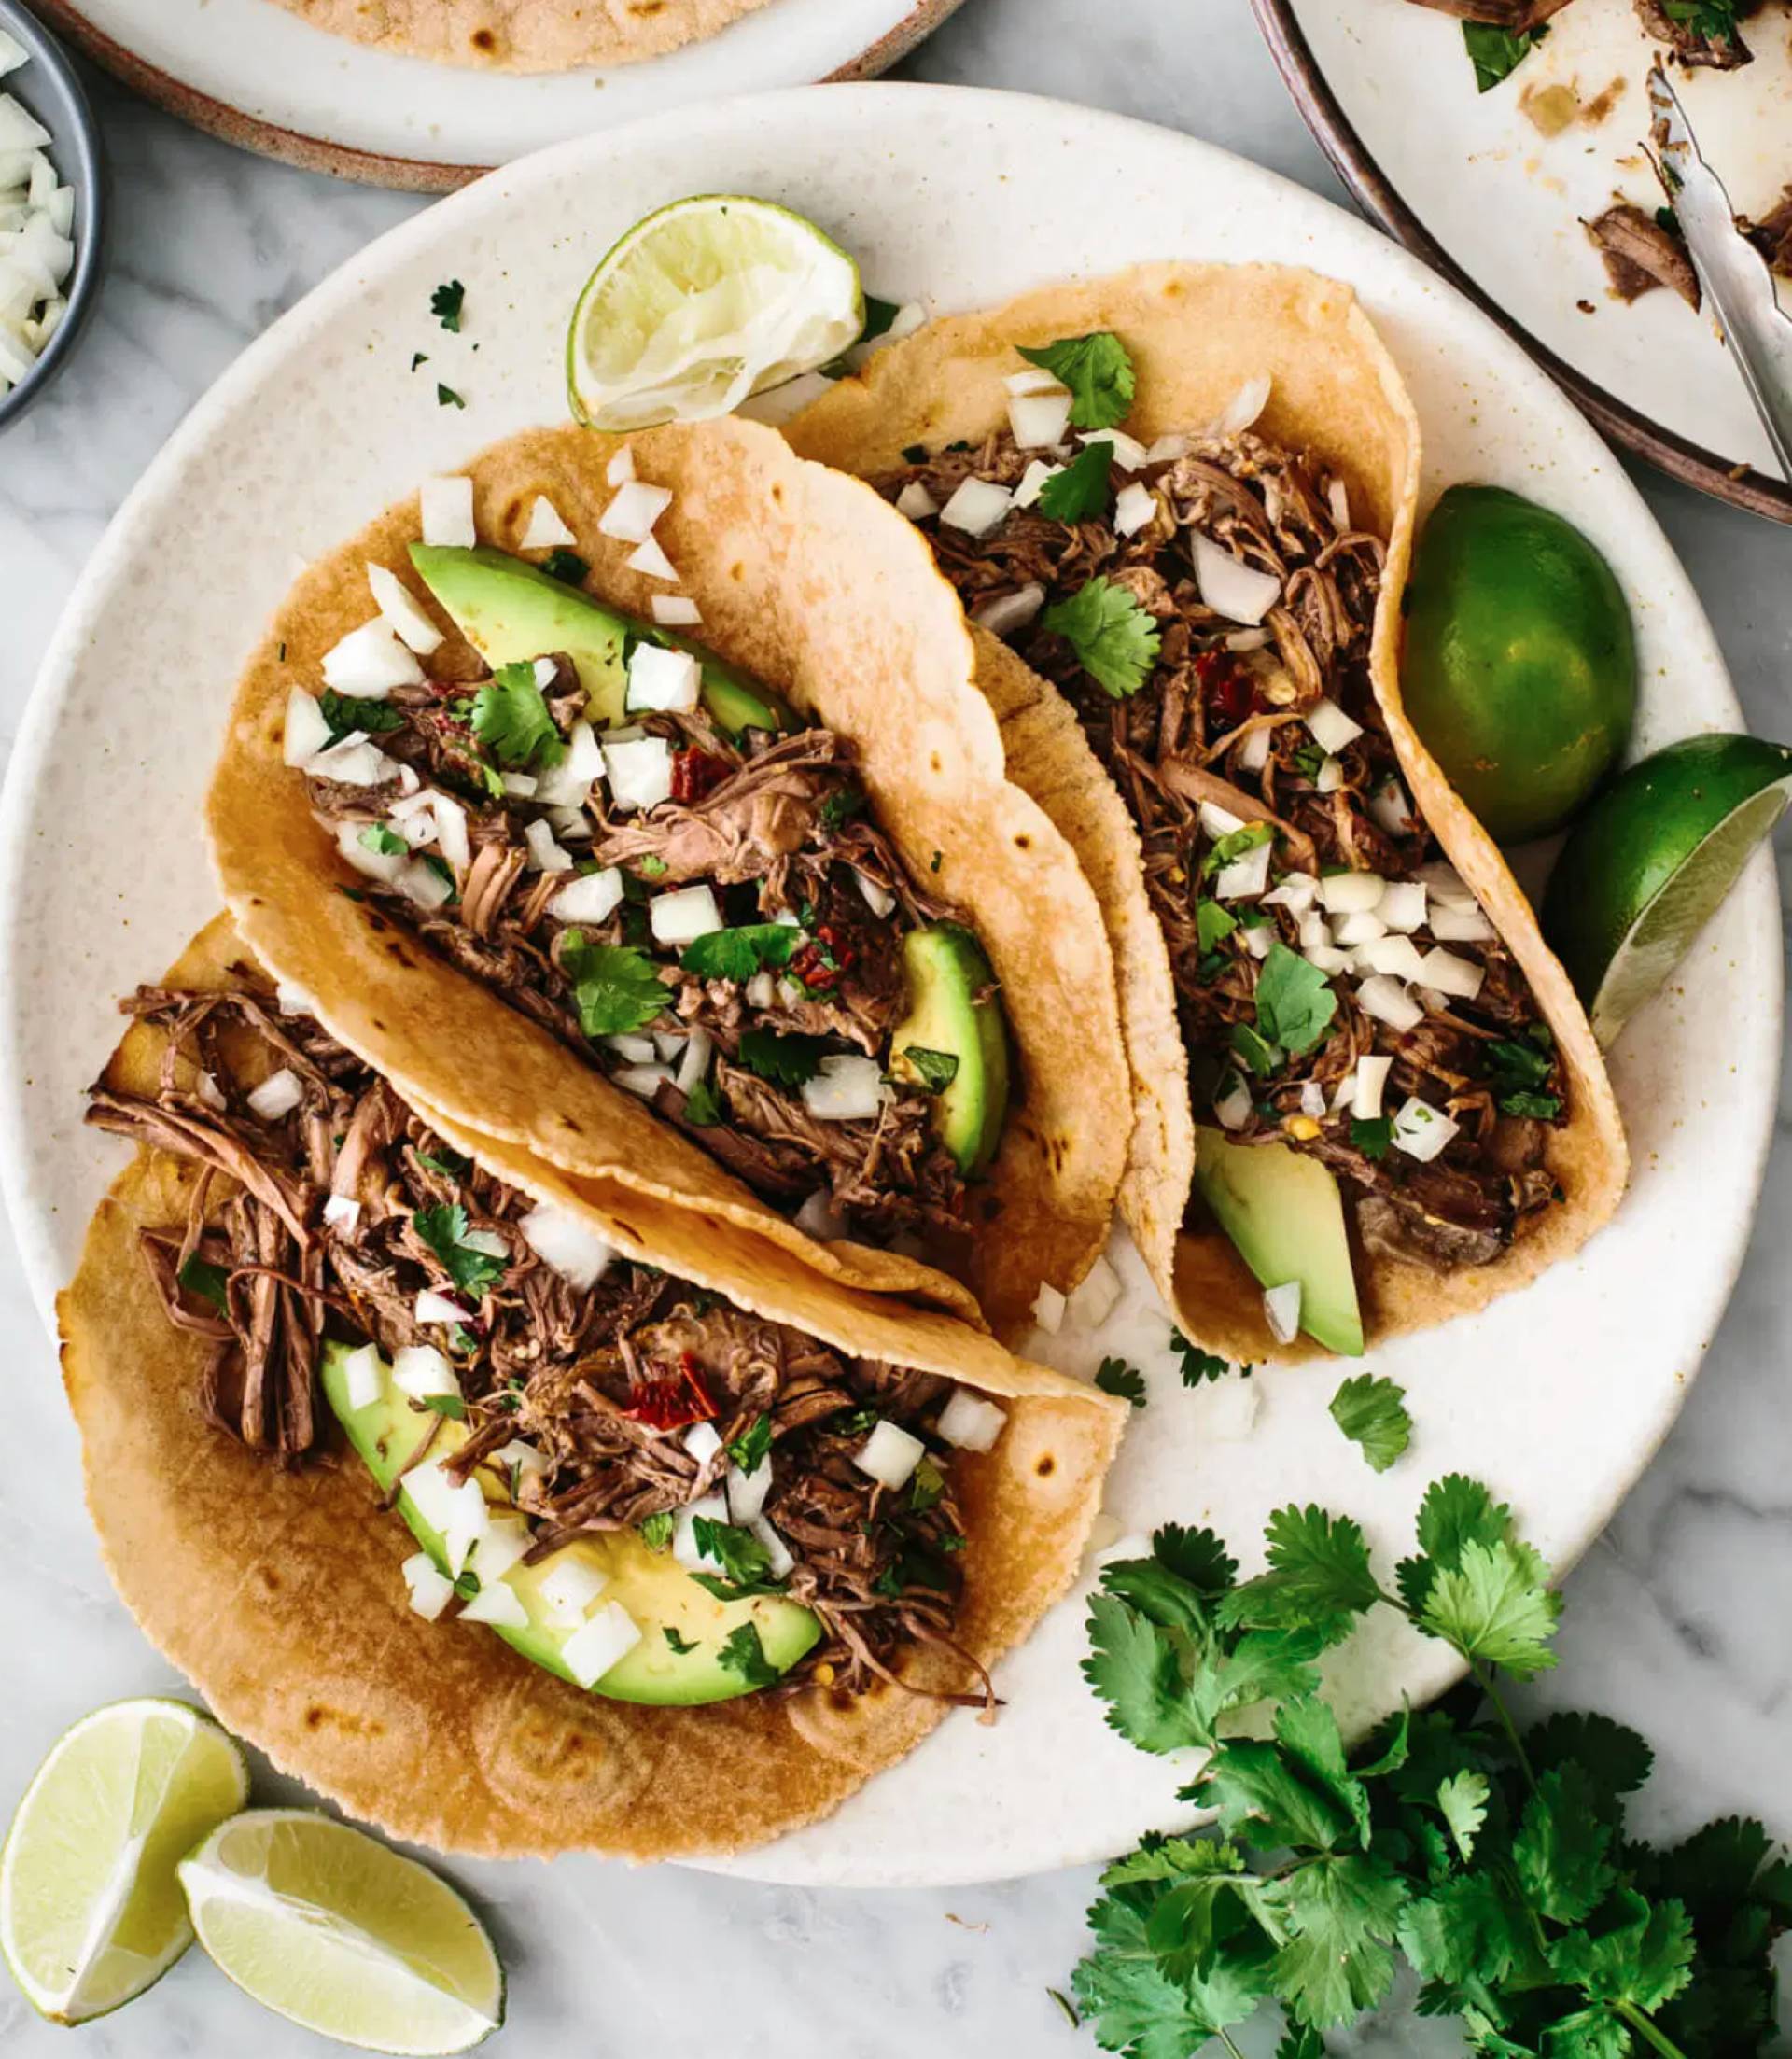 Shredded Beef Barbacoa Tacos